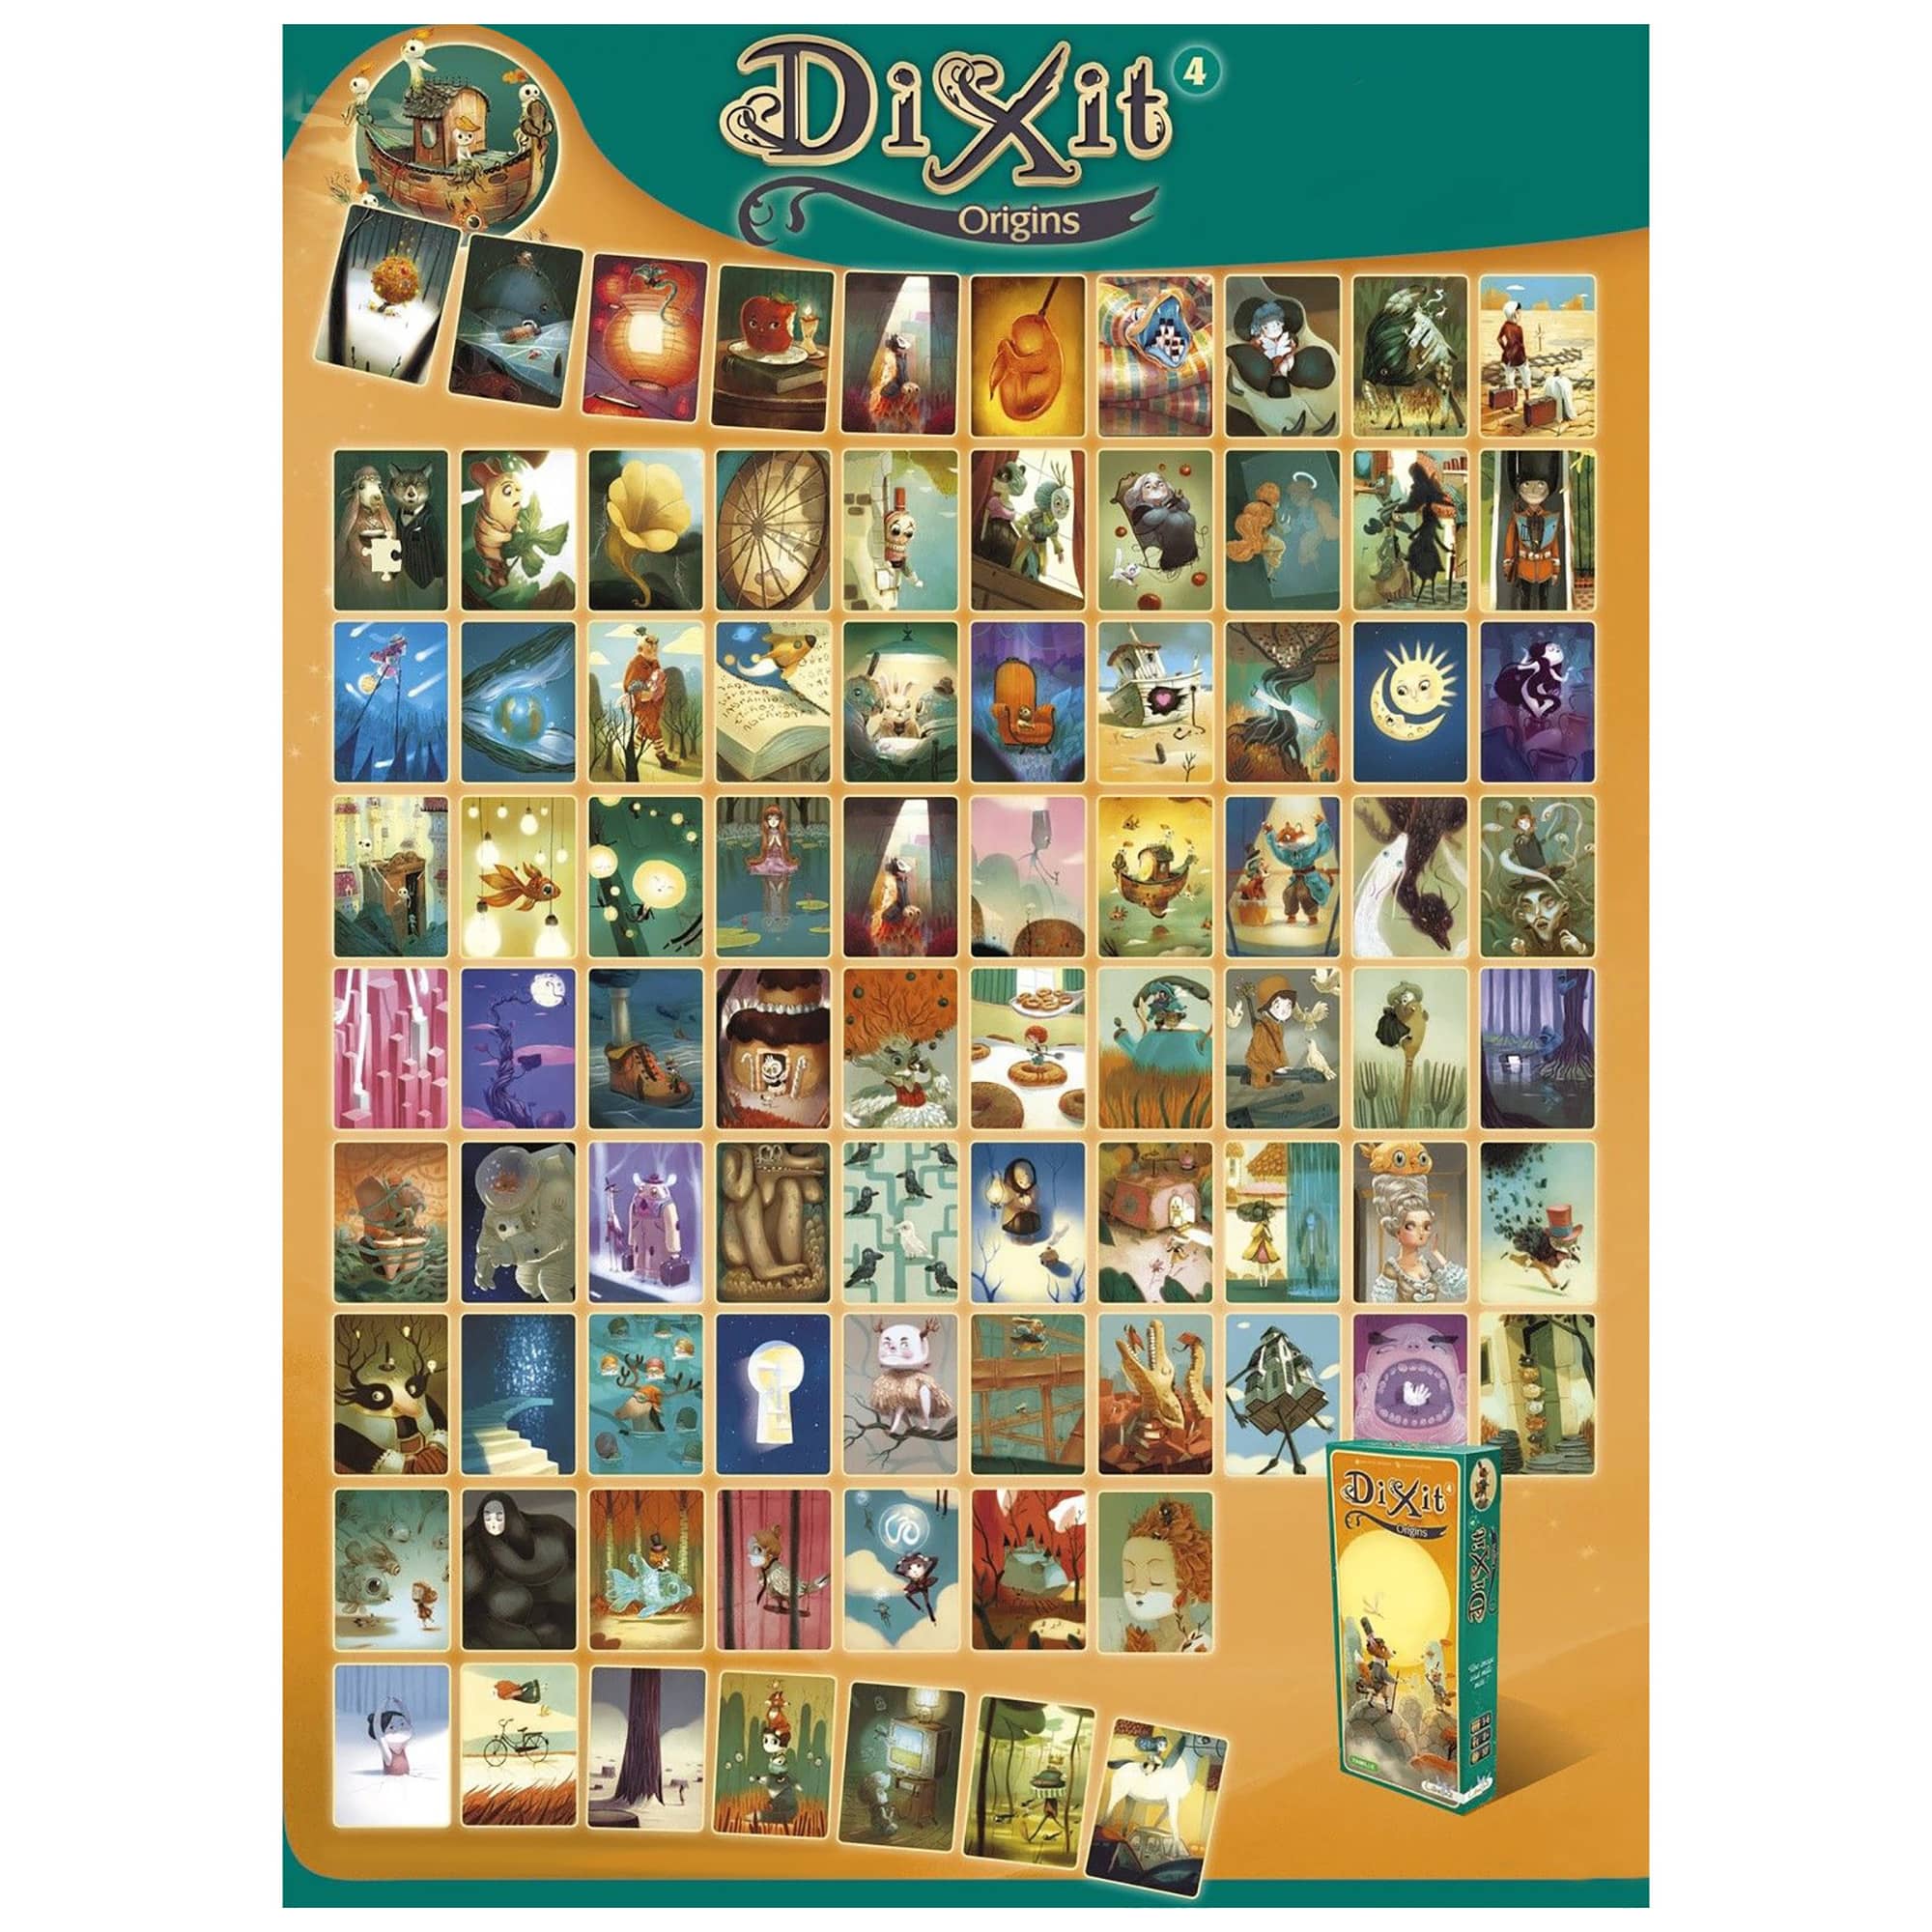 Dixit 4 Origins Board Game - Asmodee Italia